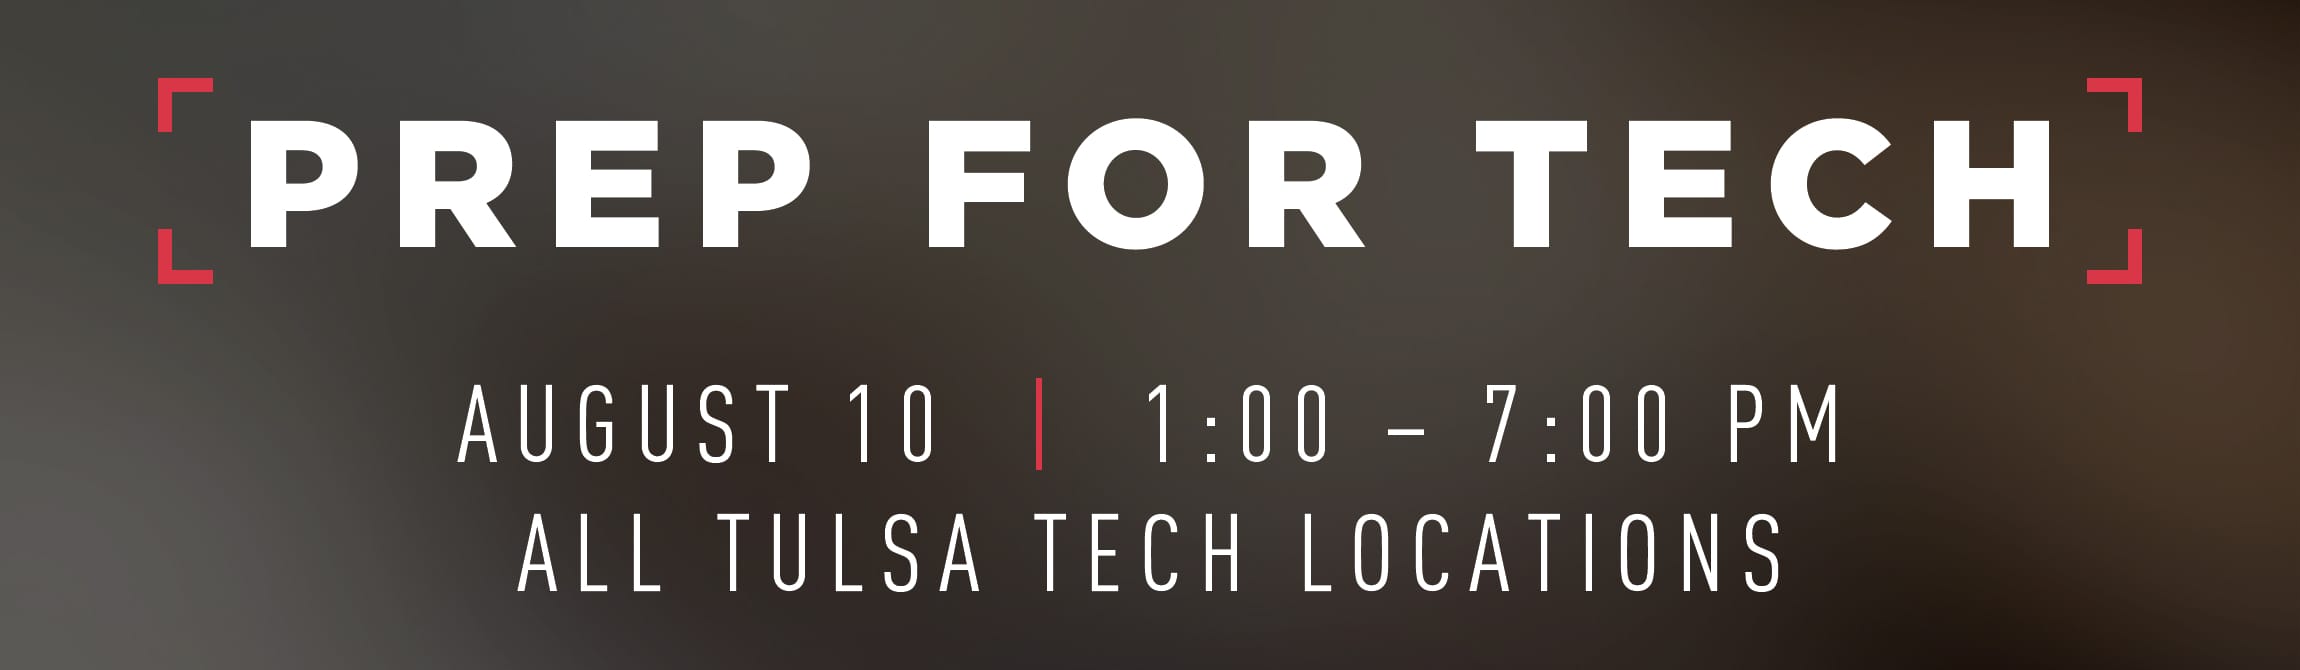 Tulsa Tech Prep for Tech graphic